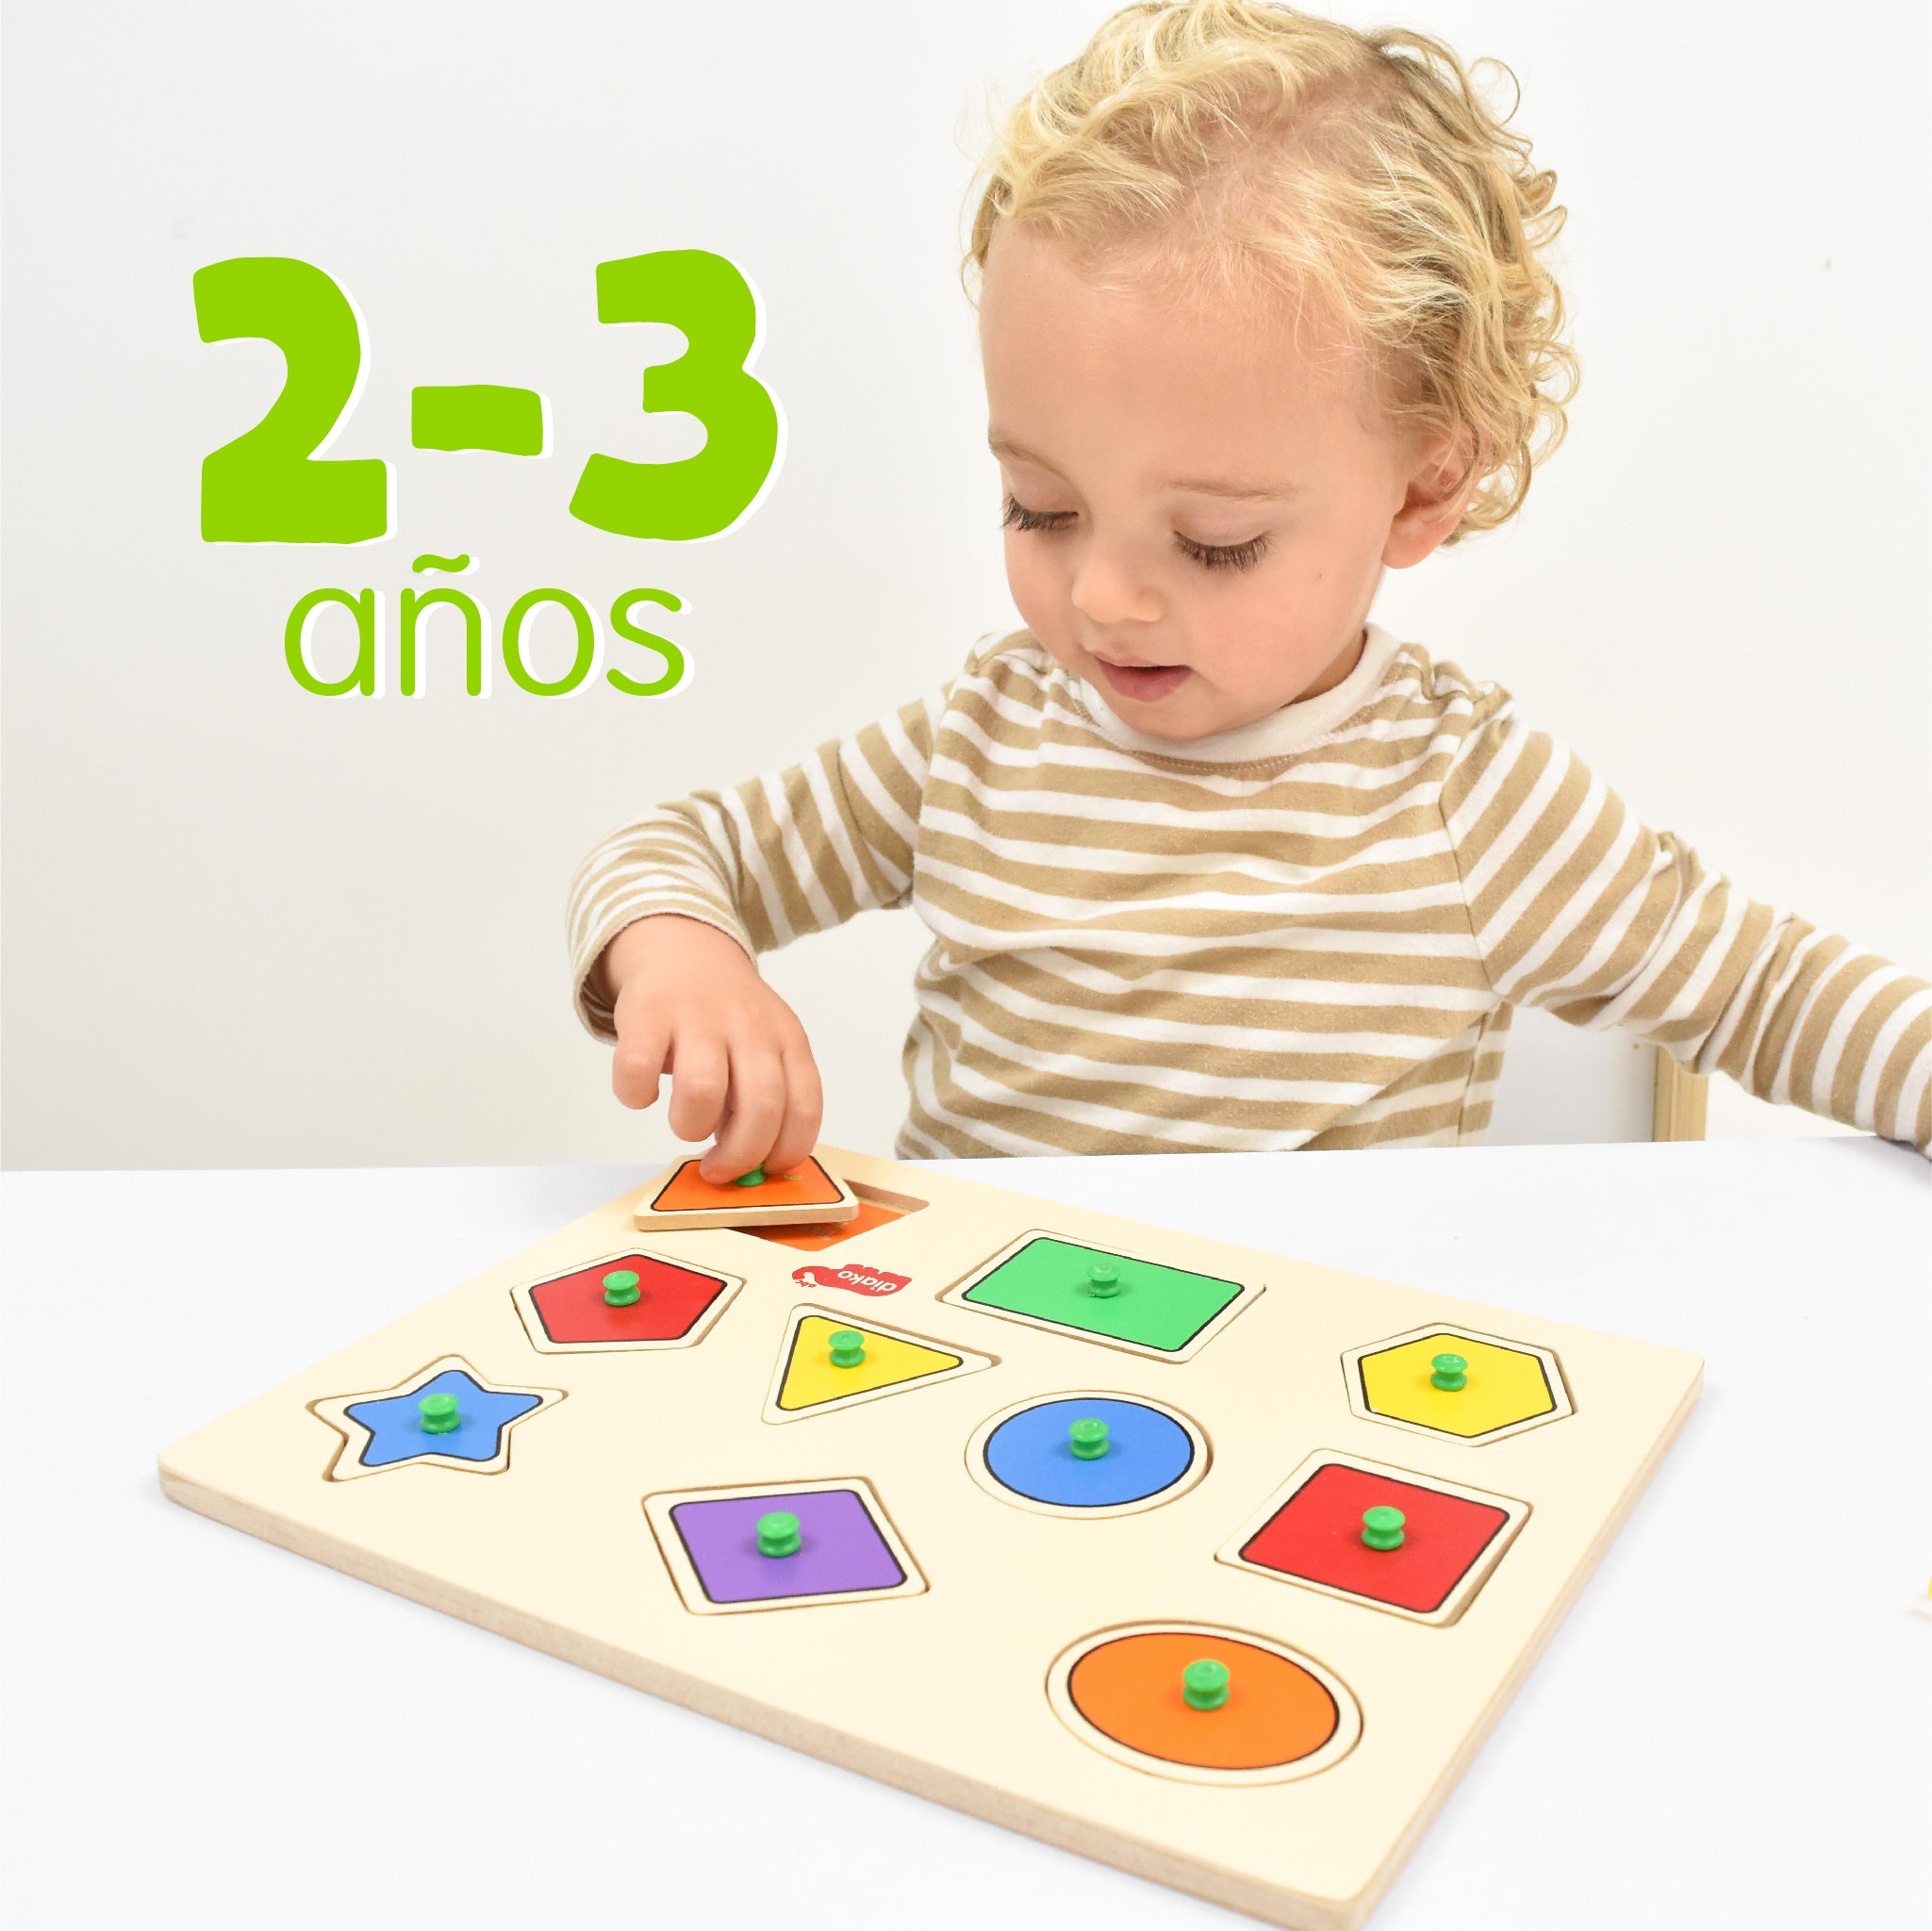 Juguetes y juegos para niños de 2 a 3 años